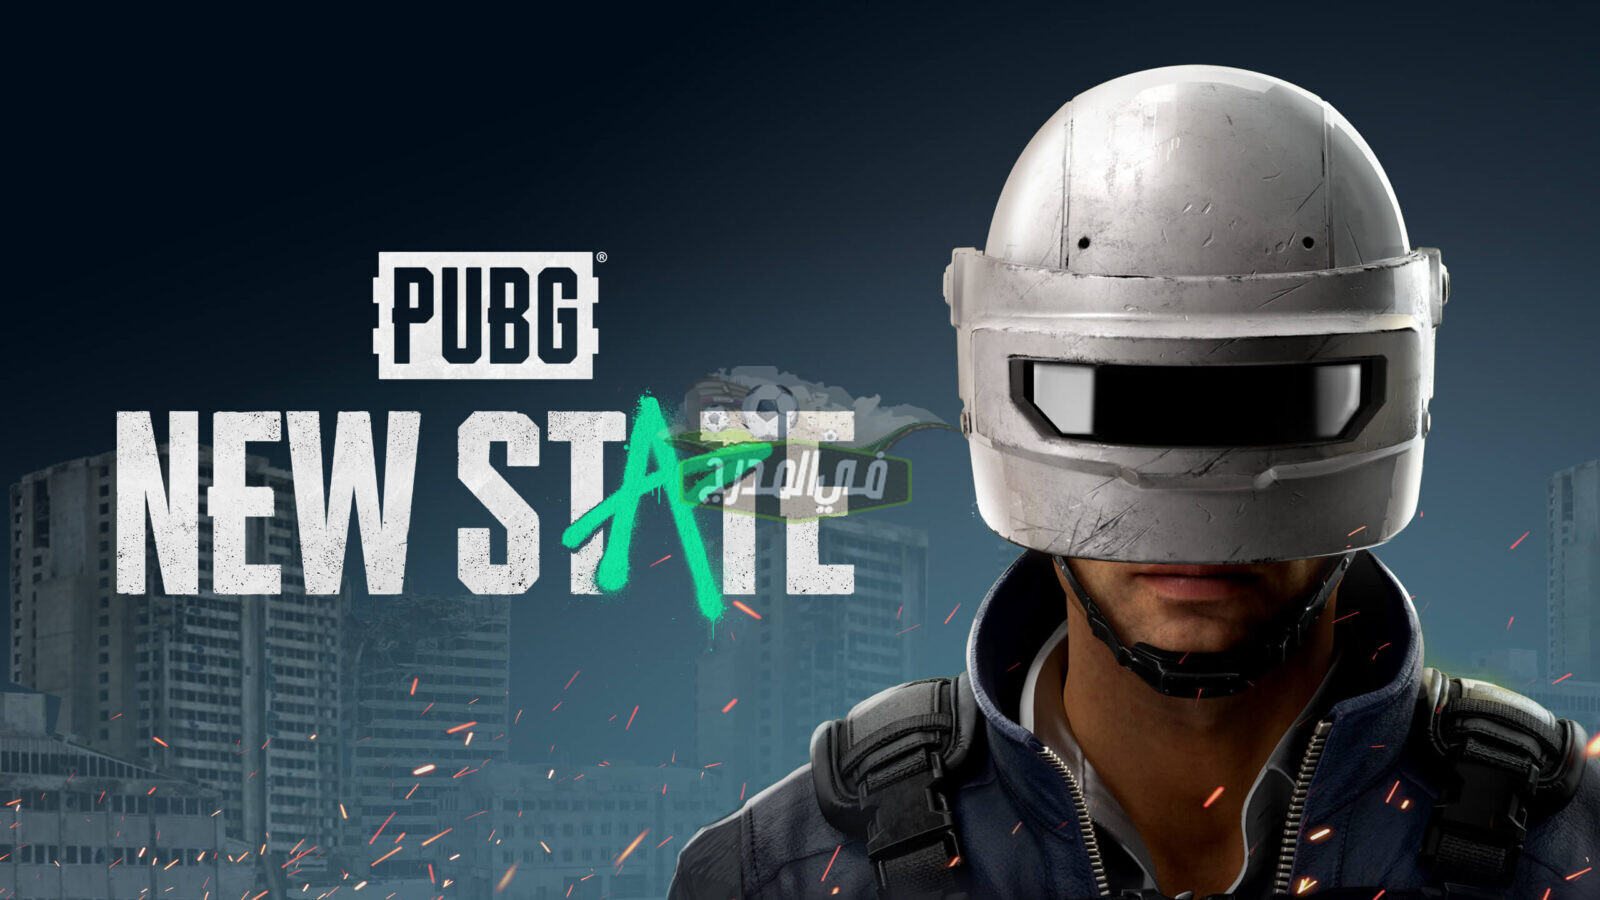 لعبة ببجي نيو ستيت PUBG New State الجديدة.. رابط تحميل لعبة ببجي الجزء الثاني وأهم مميزات PUBG New State